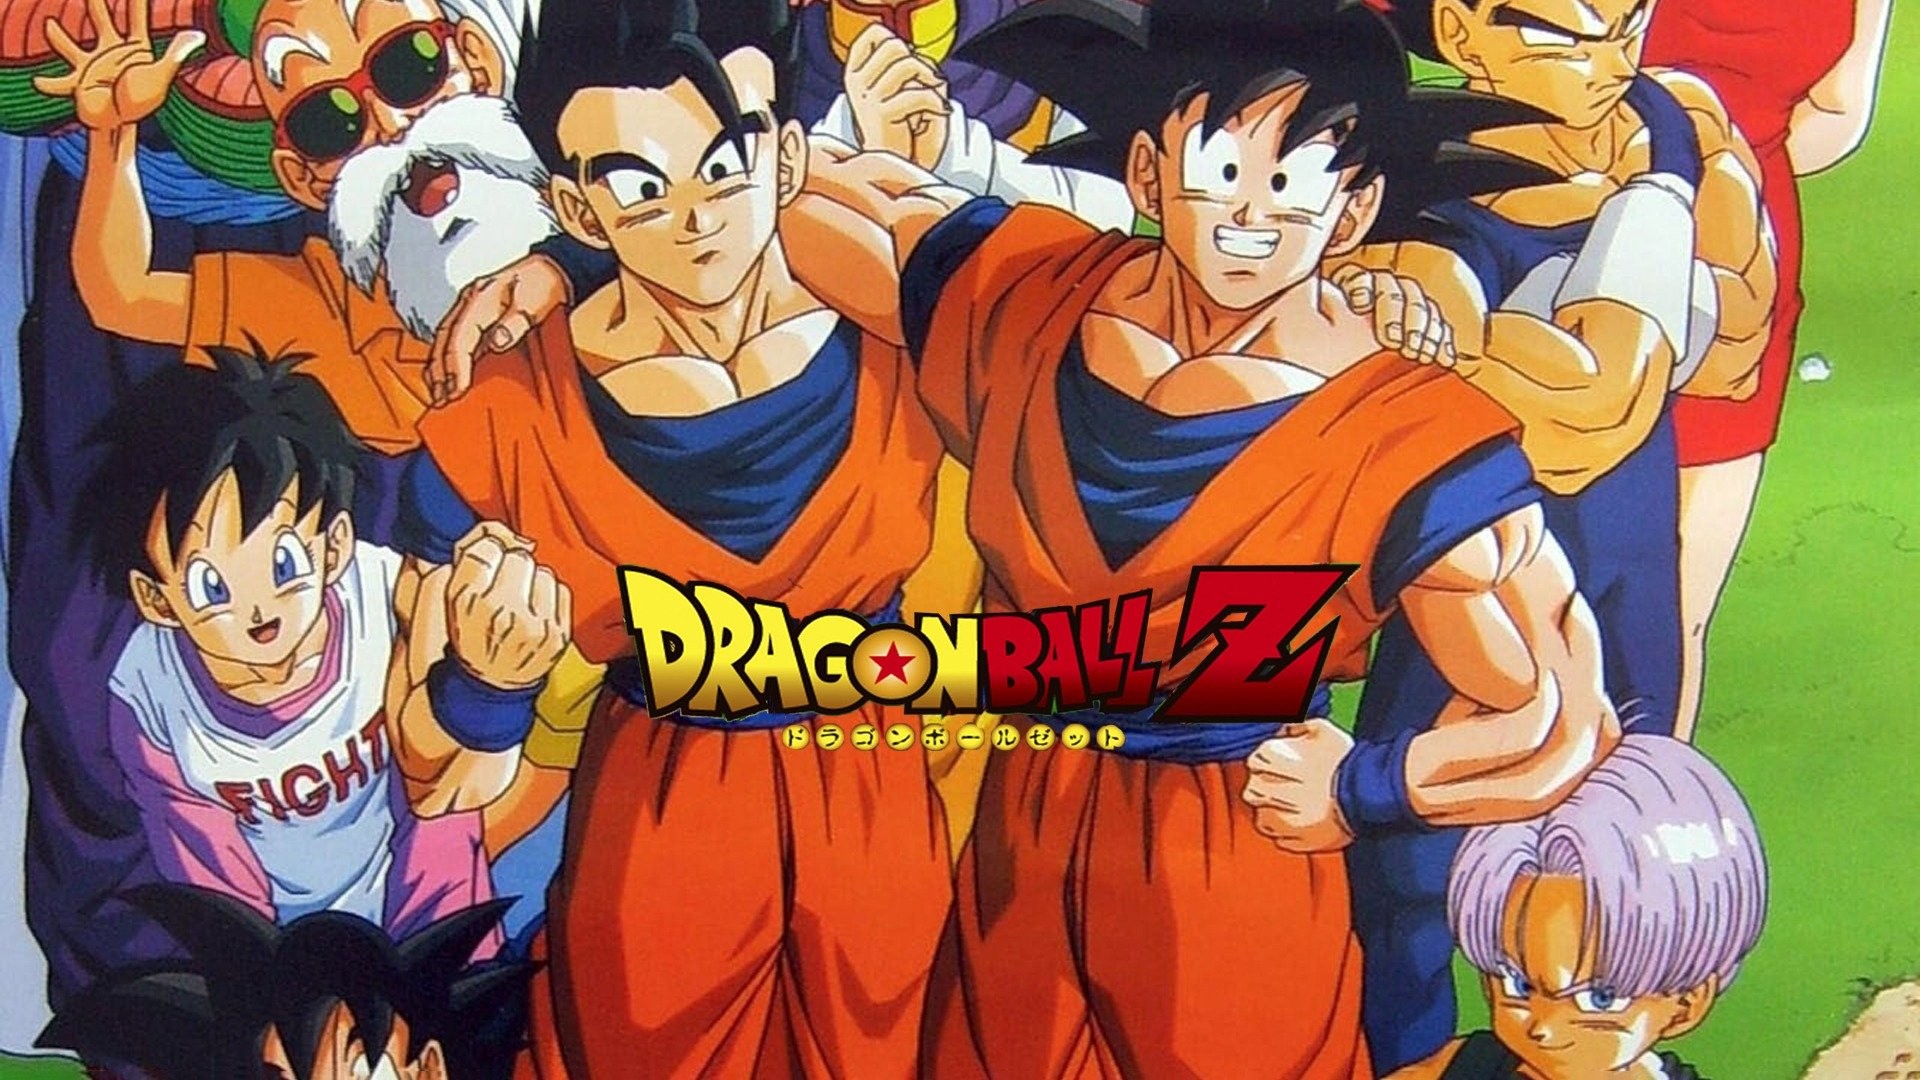 Dragon Ball Z (season 8) - Wikipedia